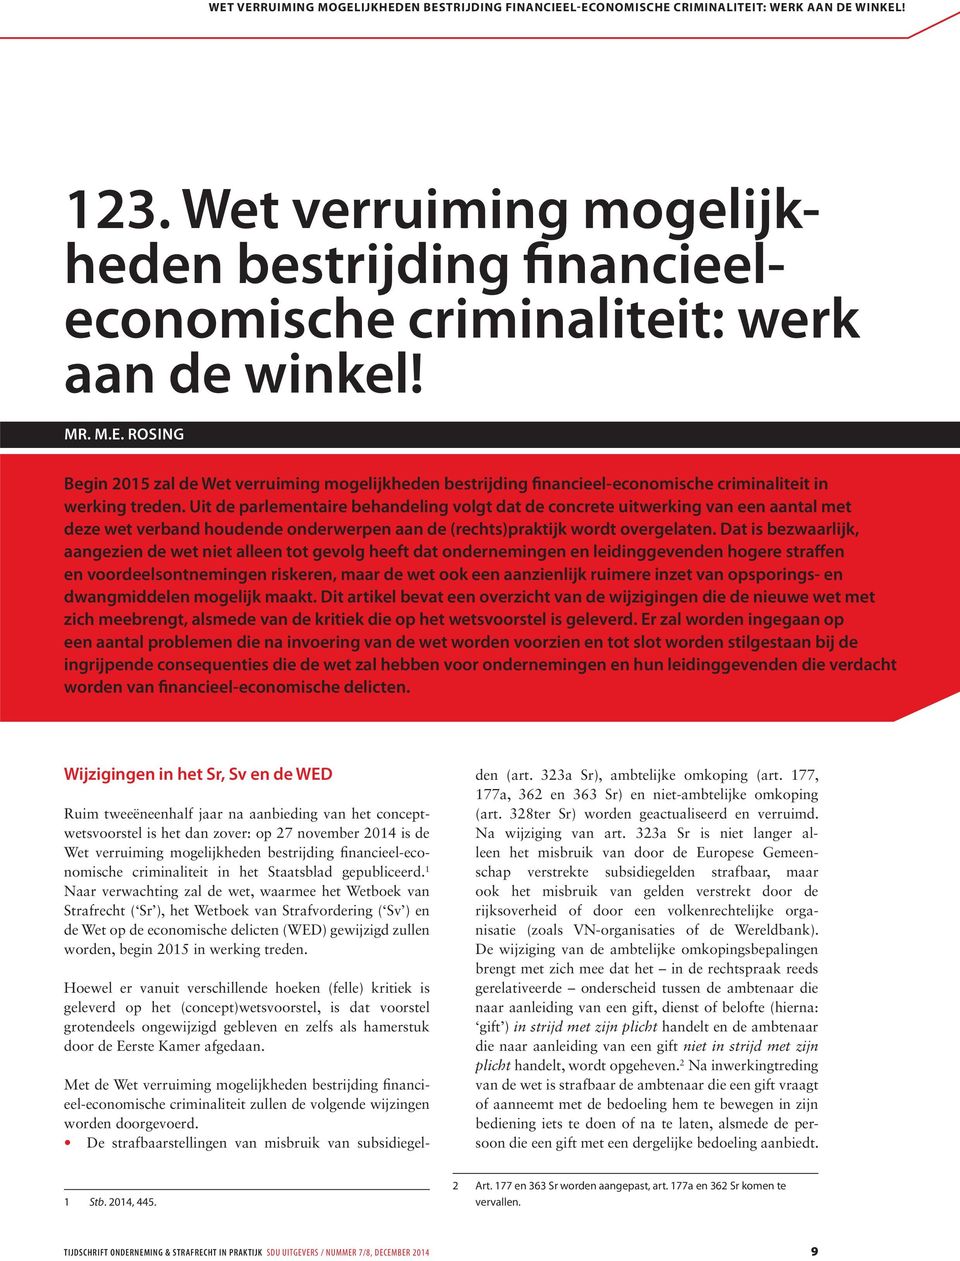 Rosing Begin 2015 zal de Wet verruiming mogelijkheden bestrijding financieel-economische criminaliteit in werking treden.